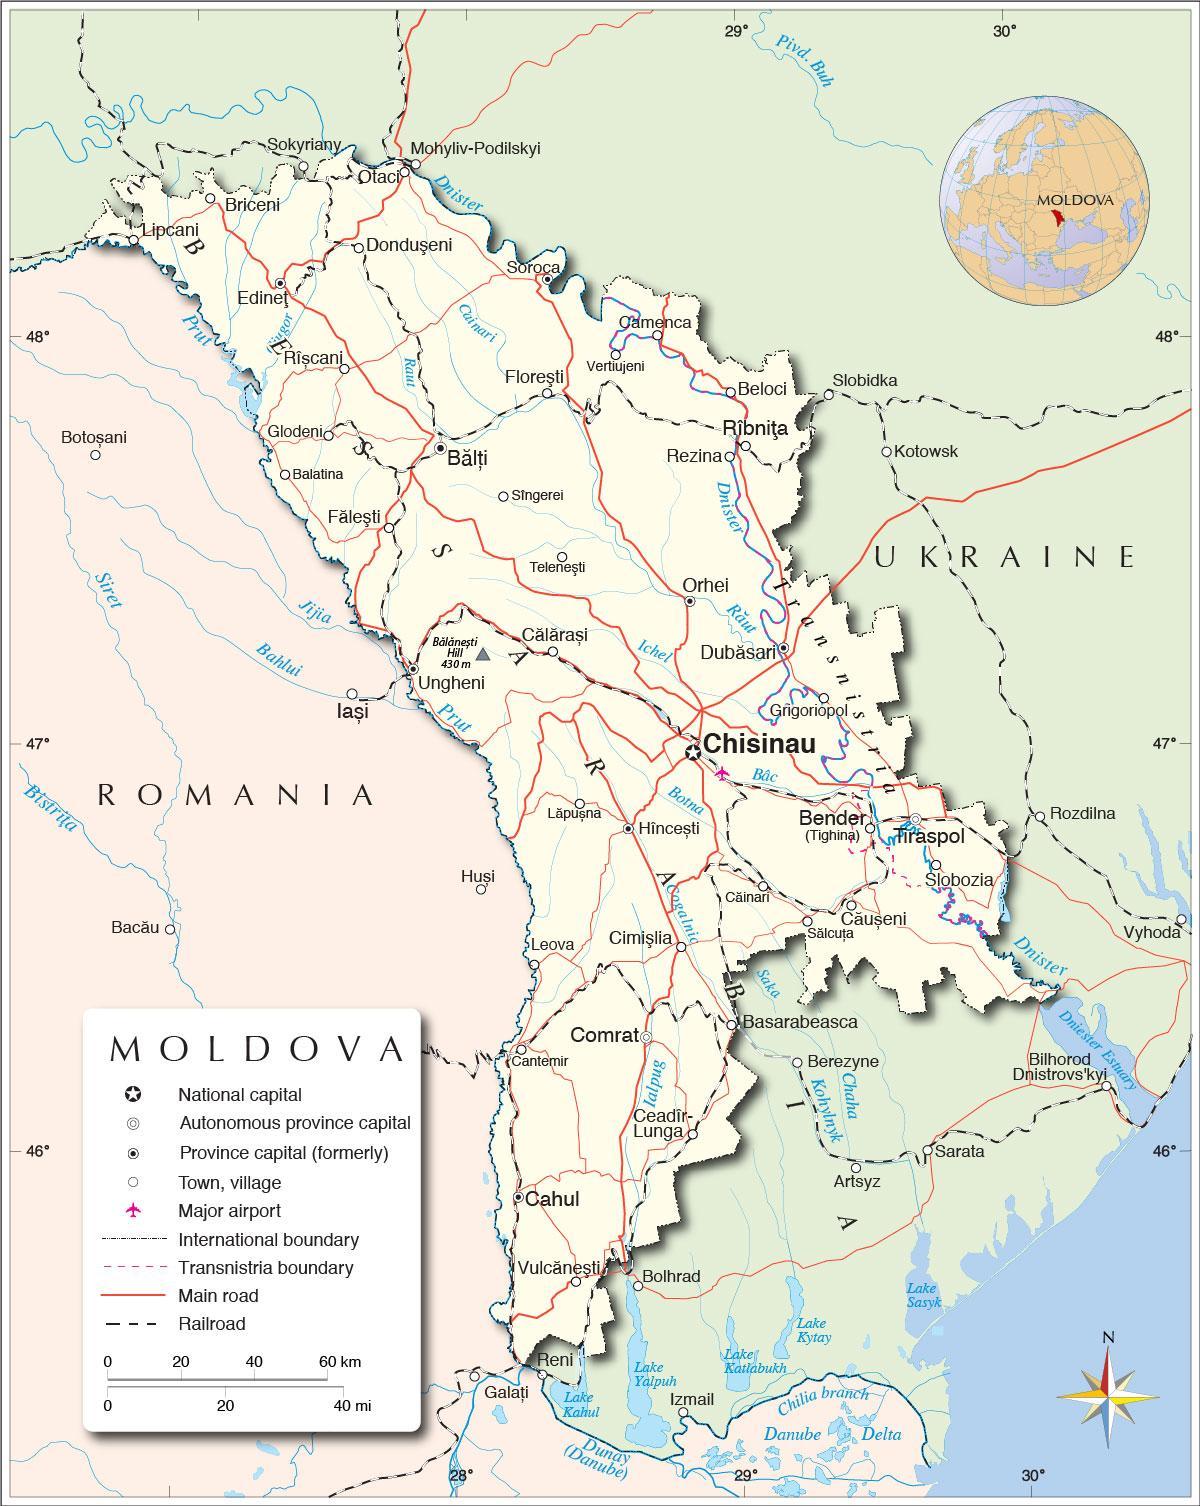 Kort over republikken Moldova